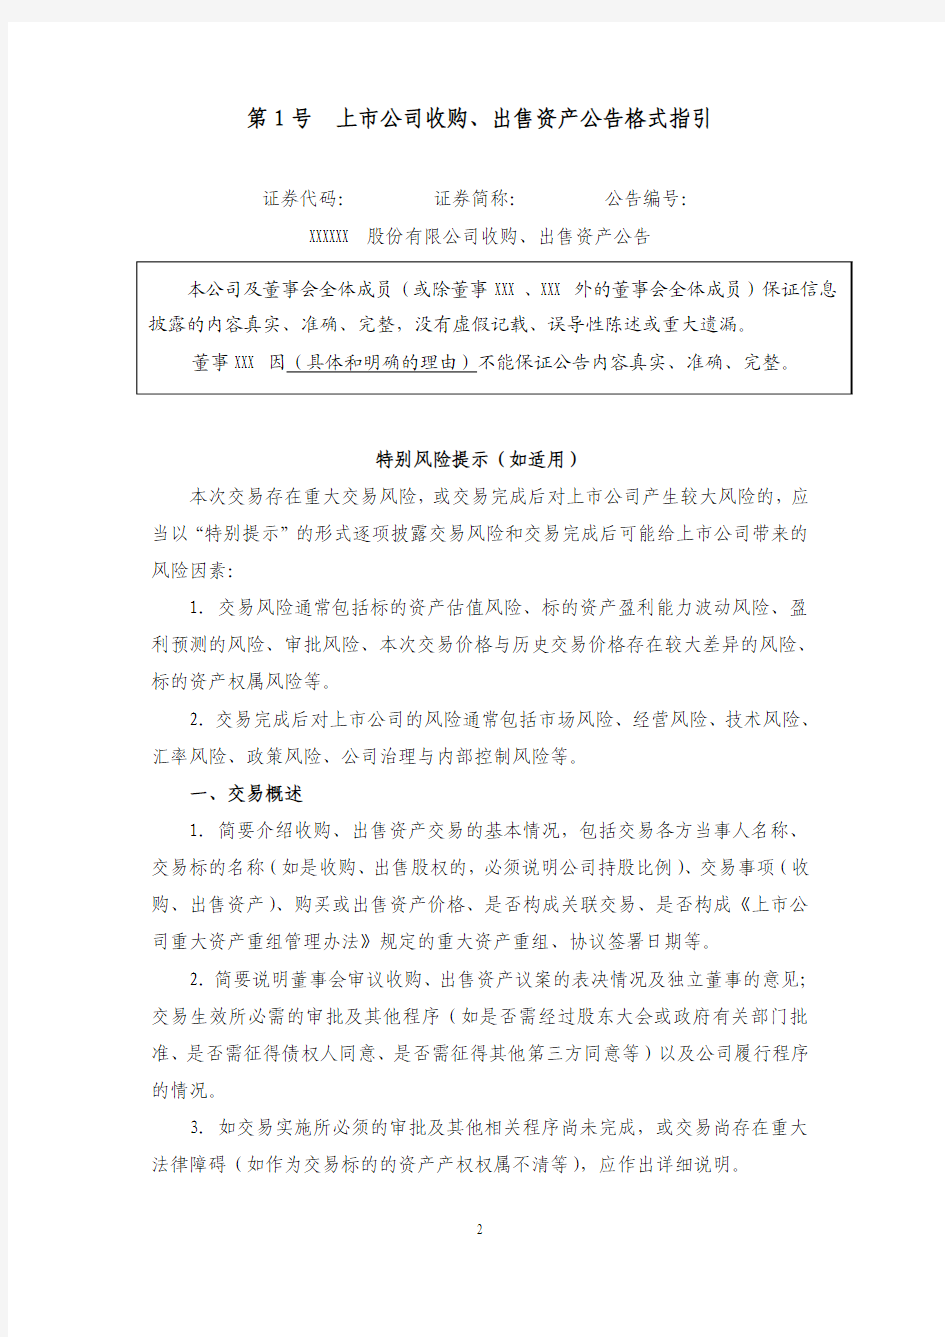 深圳证券交易所上市公司信息披露格式指引 第1号-第17号